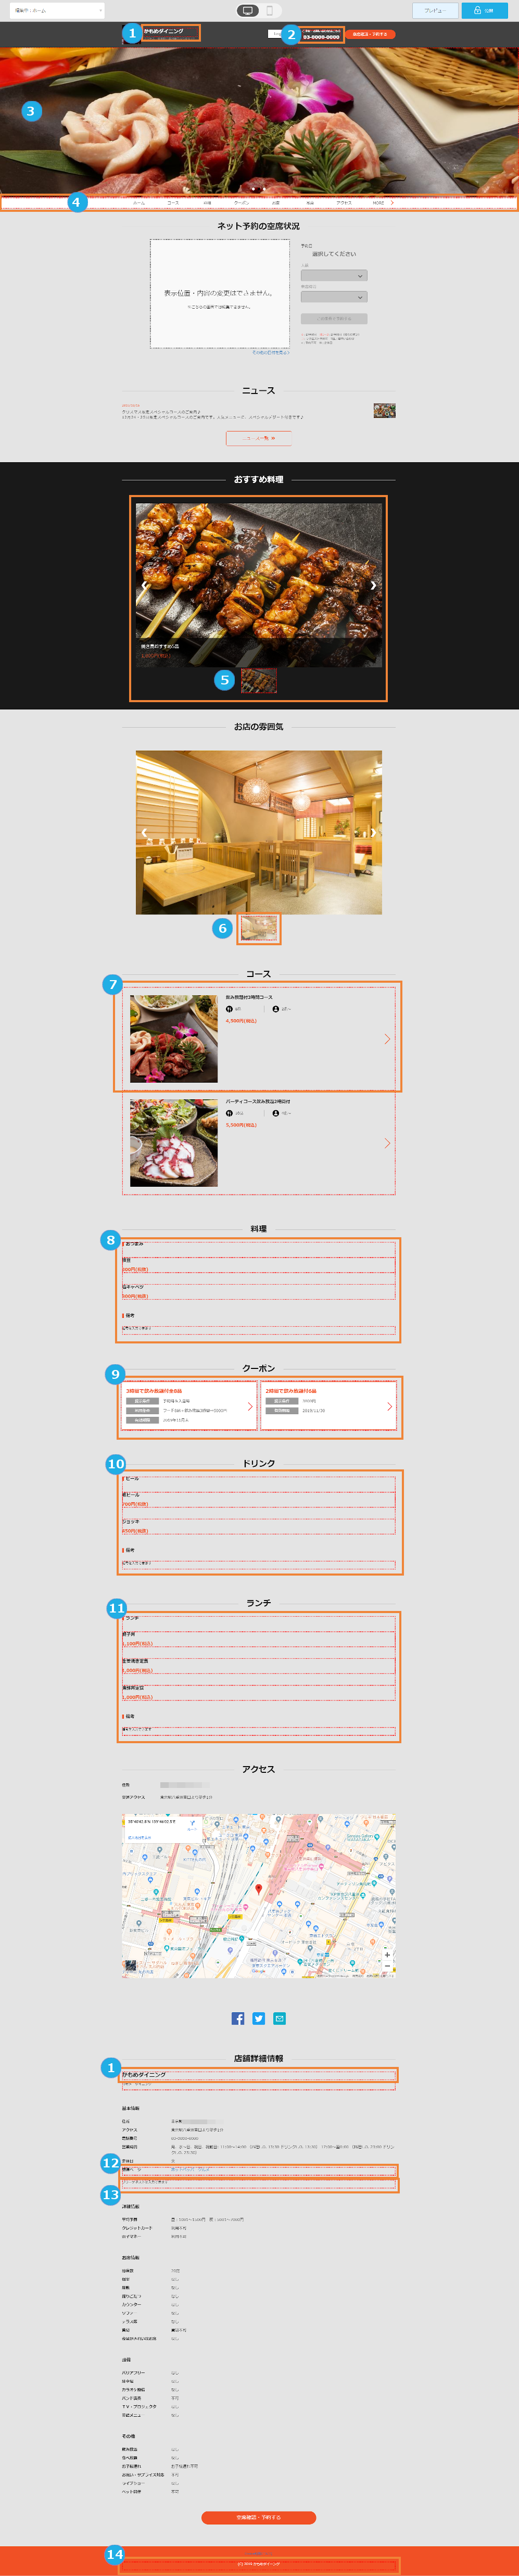 レストランボード ホームページ作成 ホームページ作成管理画面